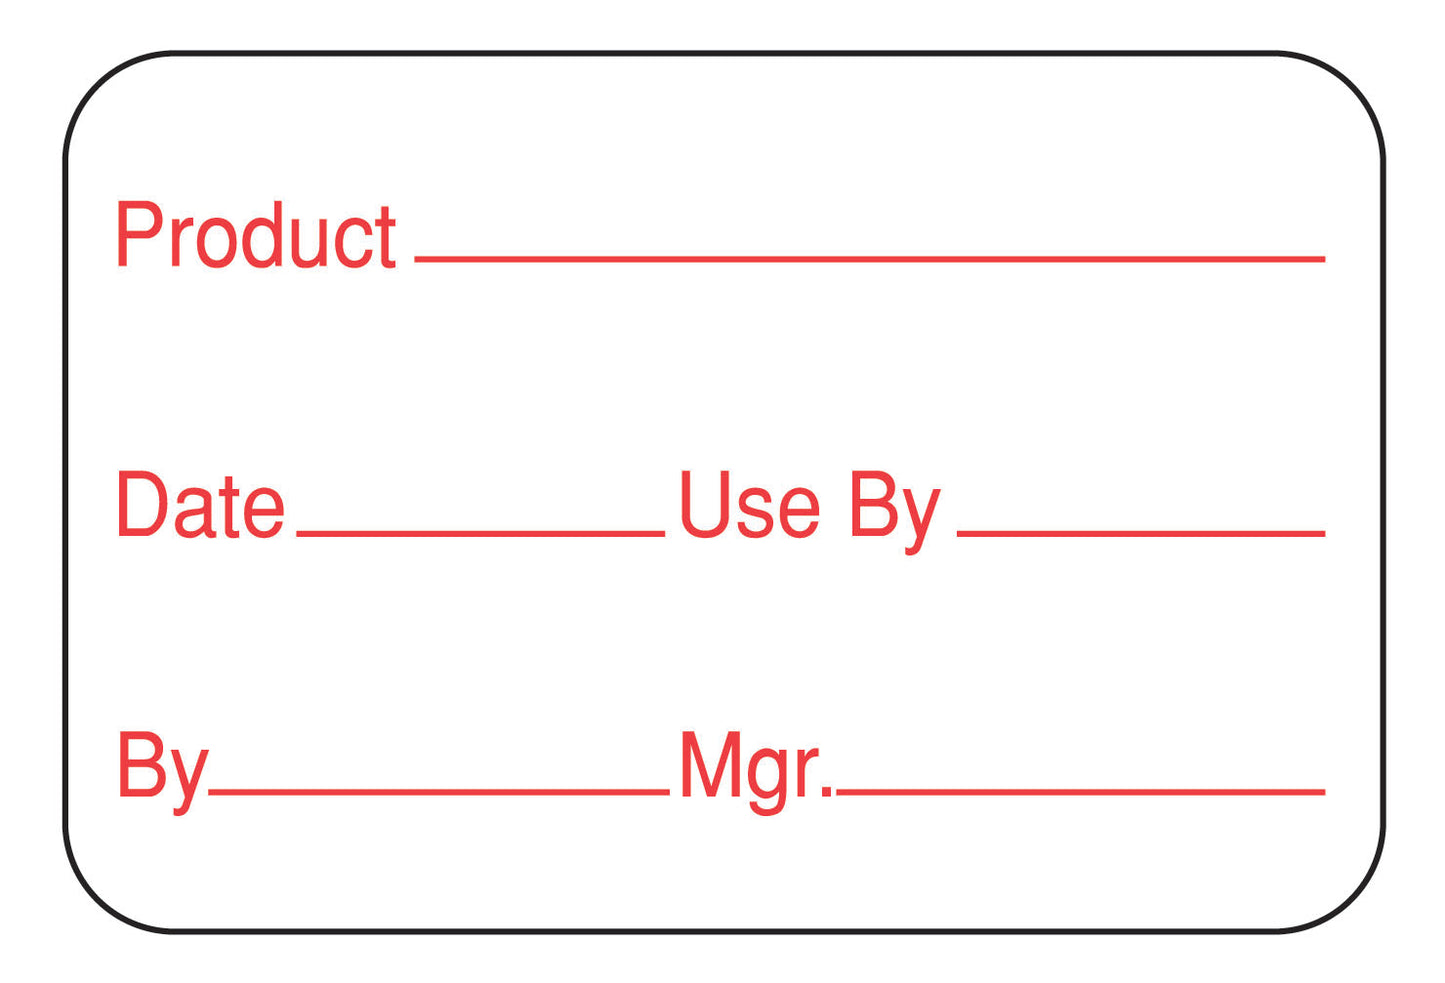 1" x 1.5" Dissolvable Product Date Label